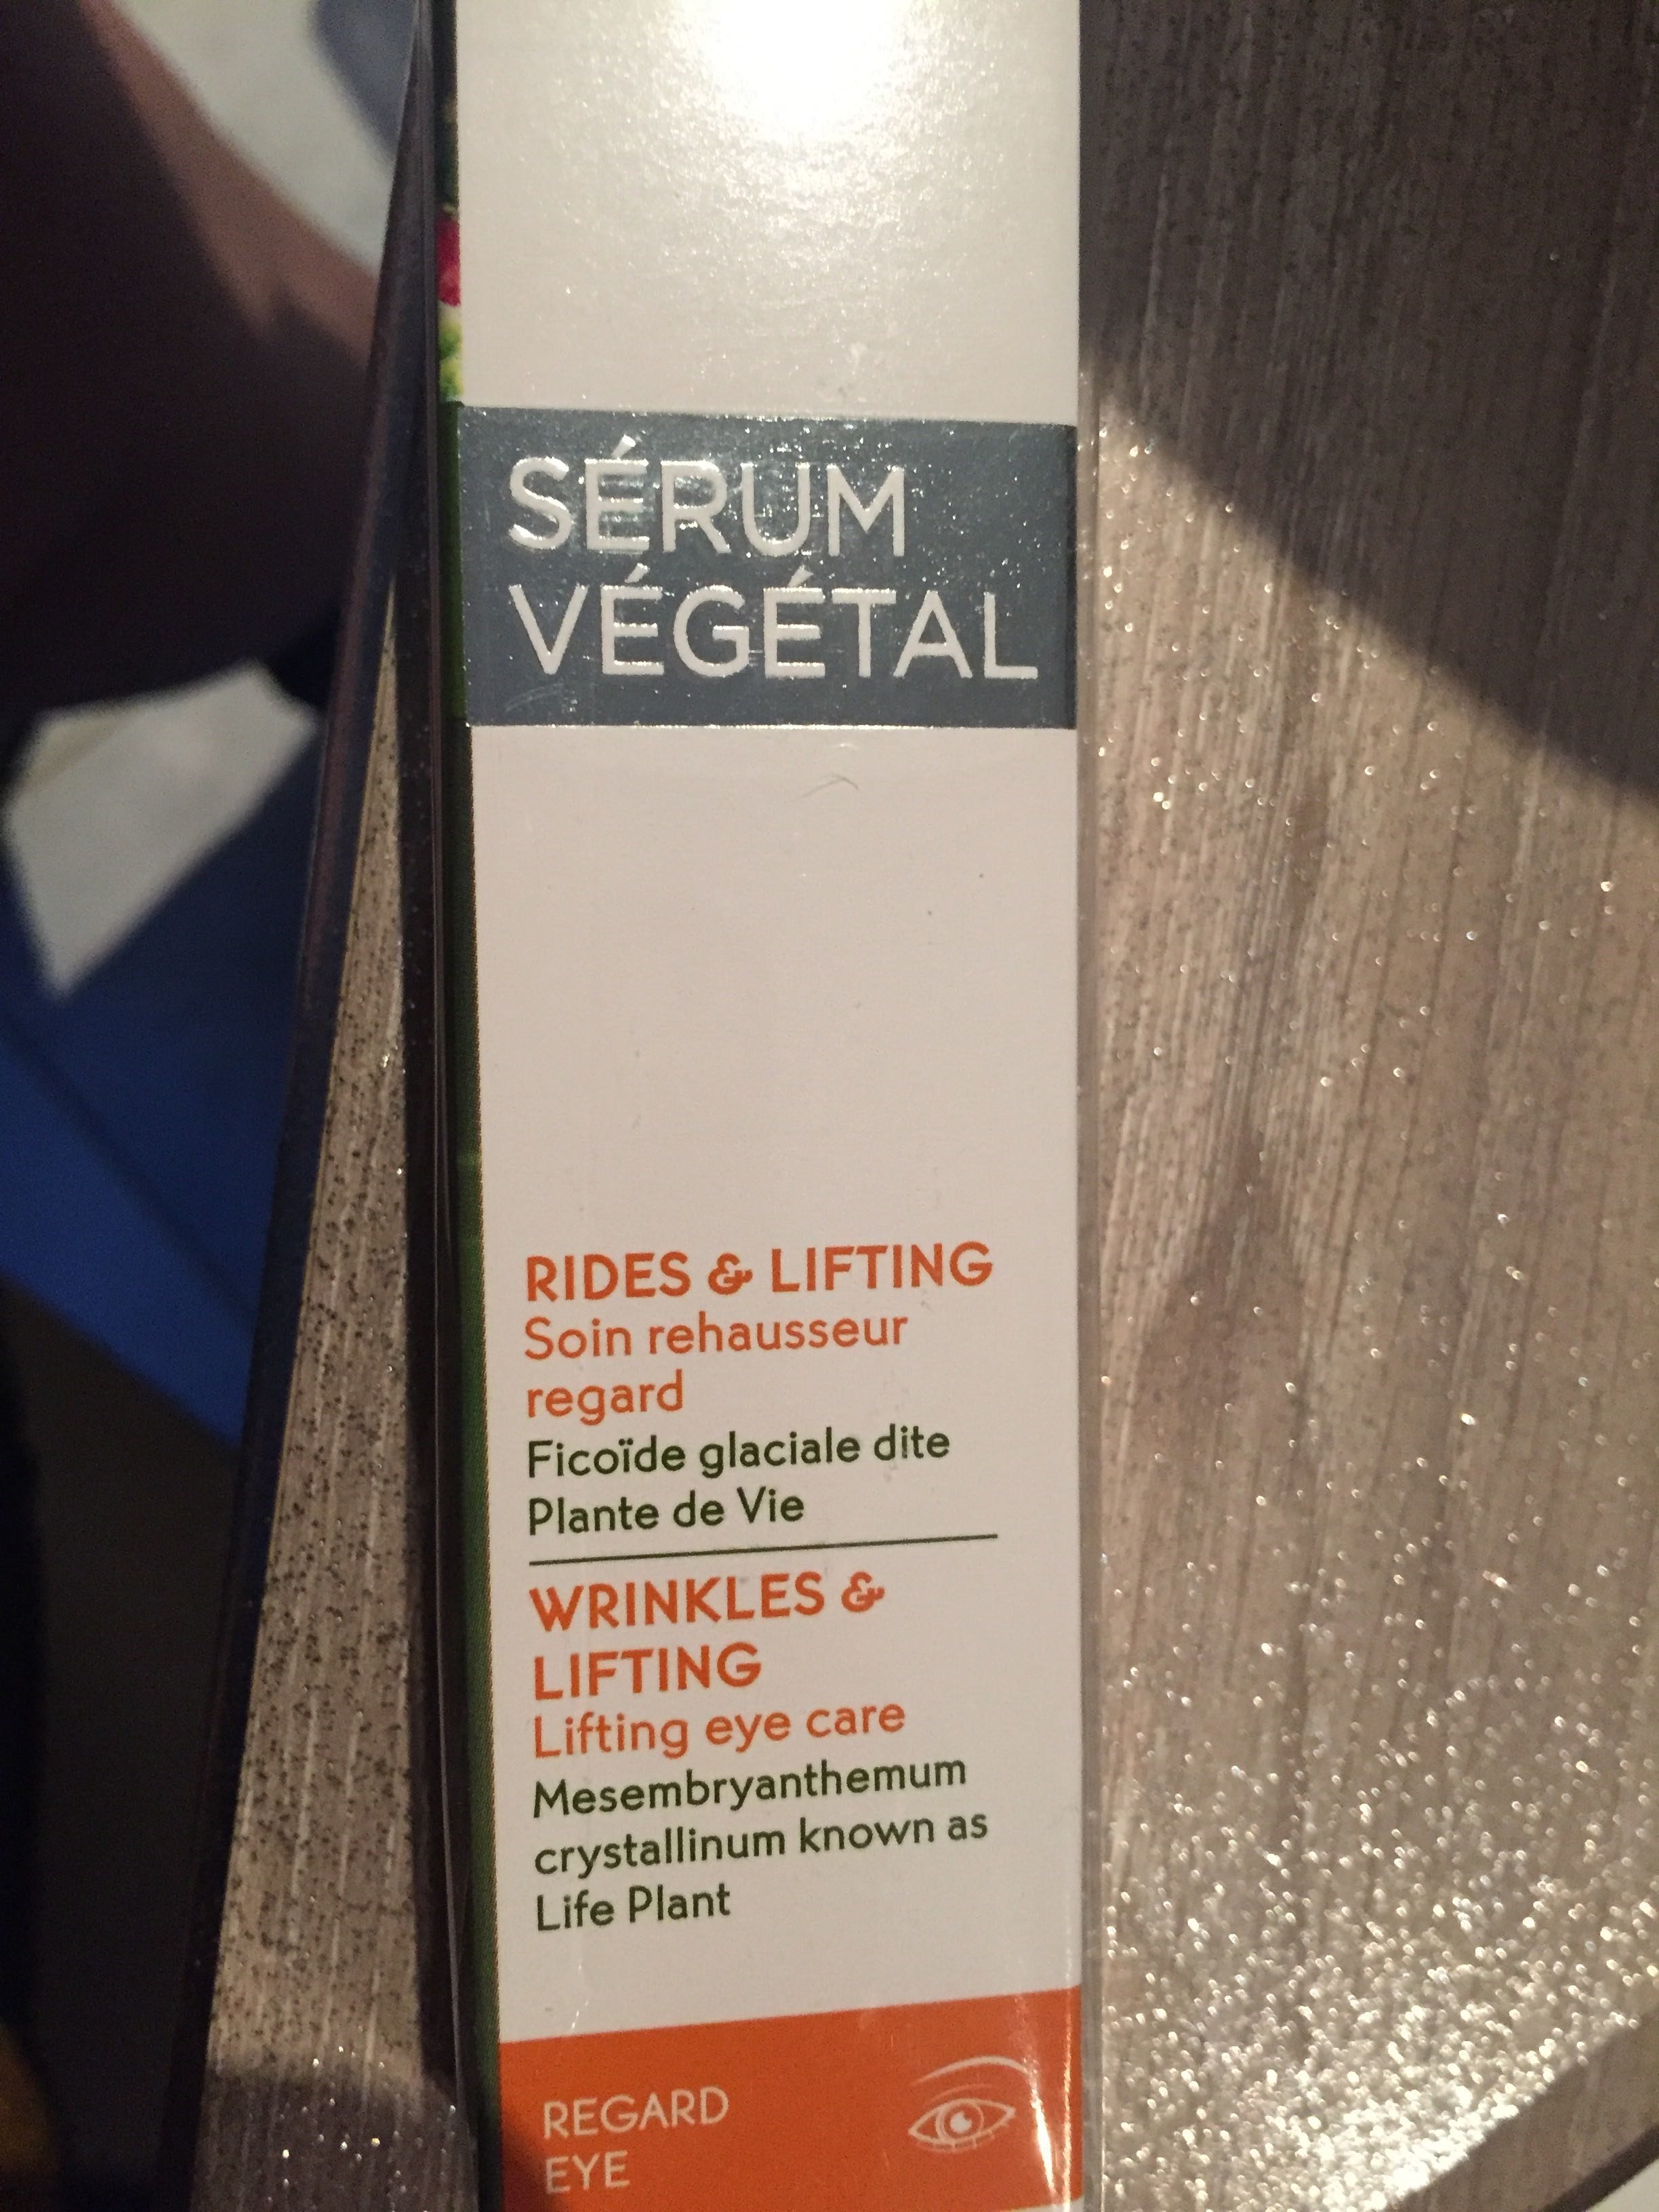 Serum végétal - Product - fr